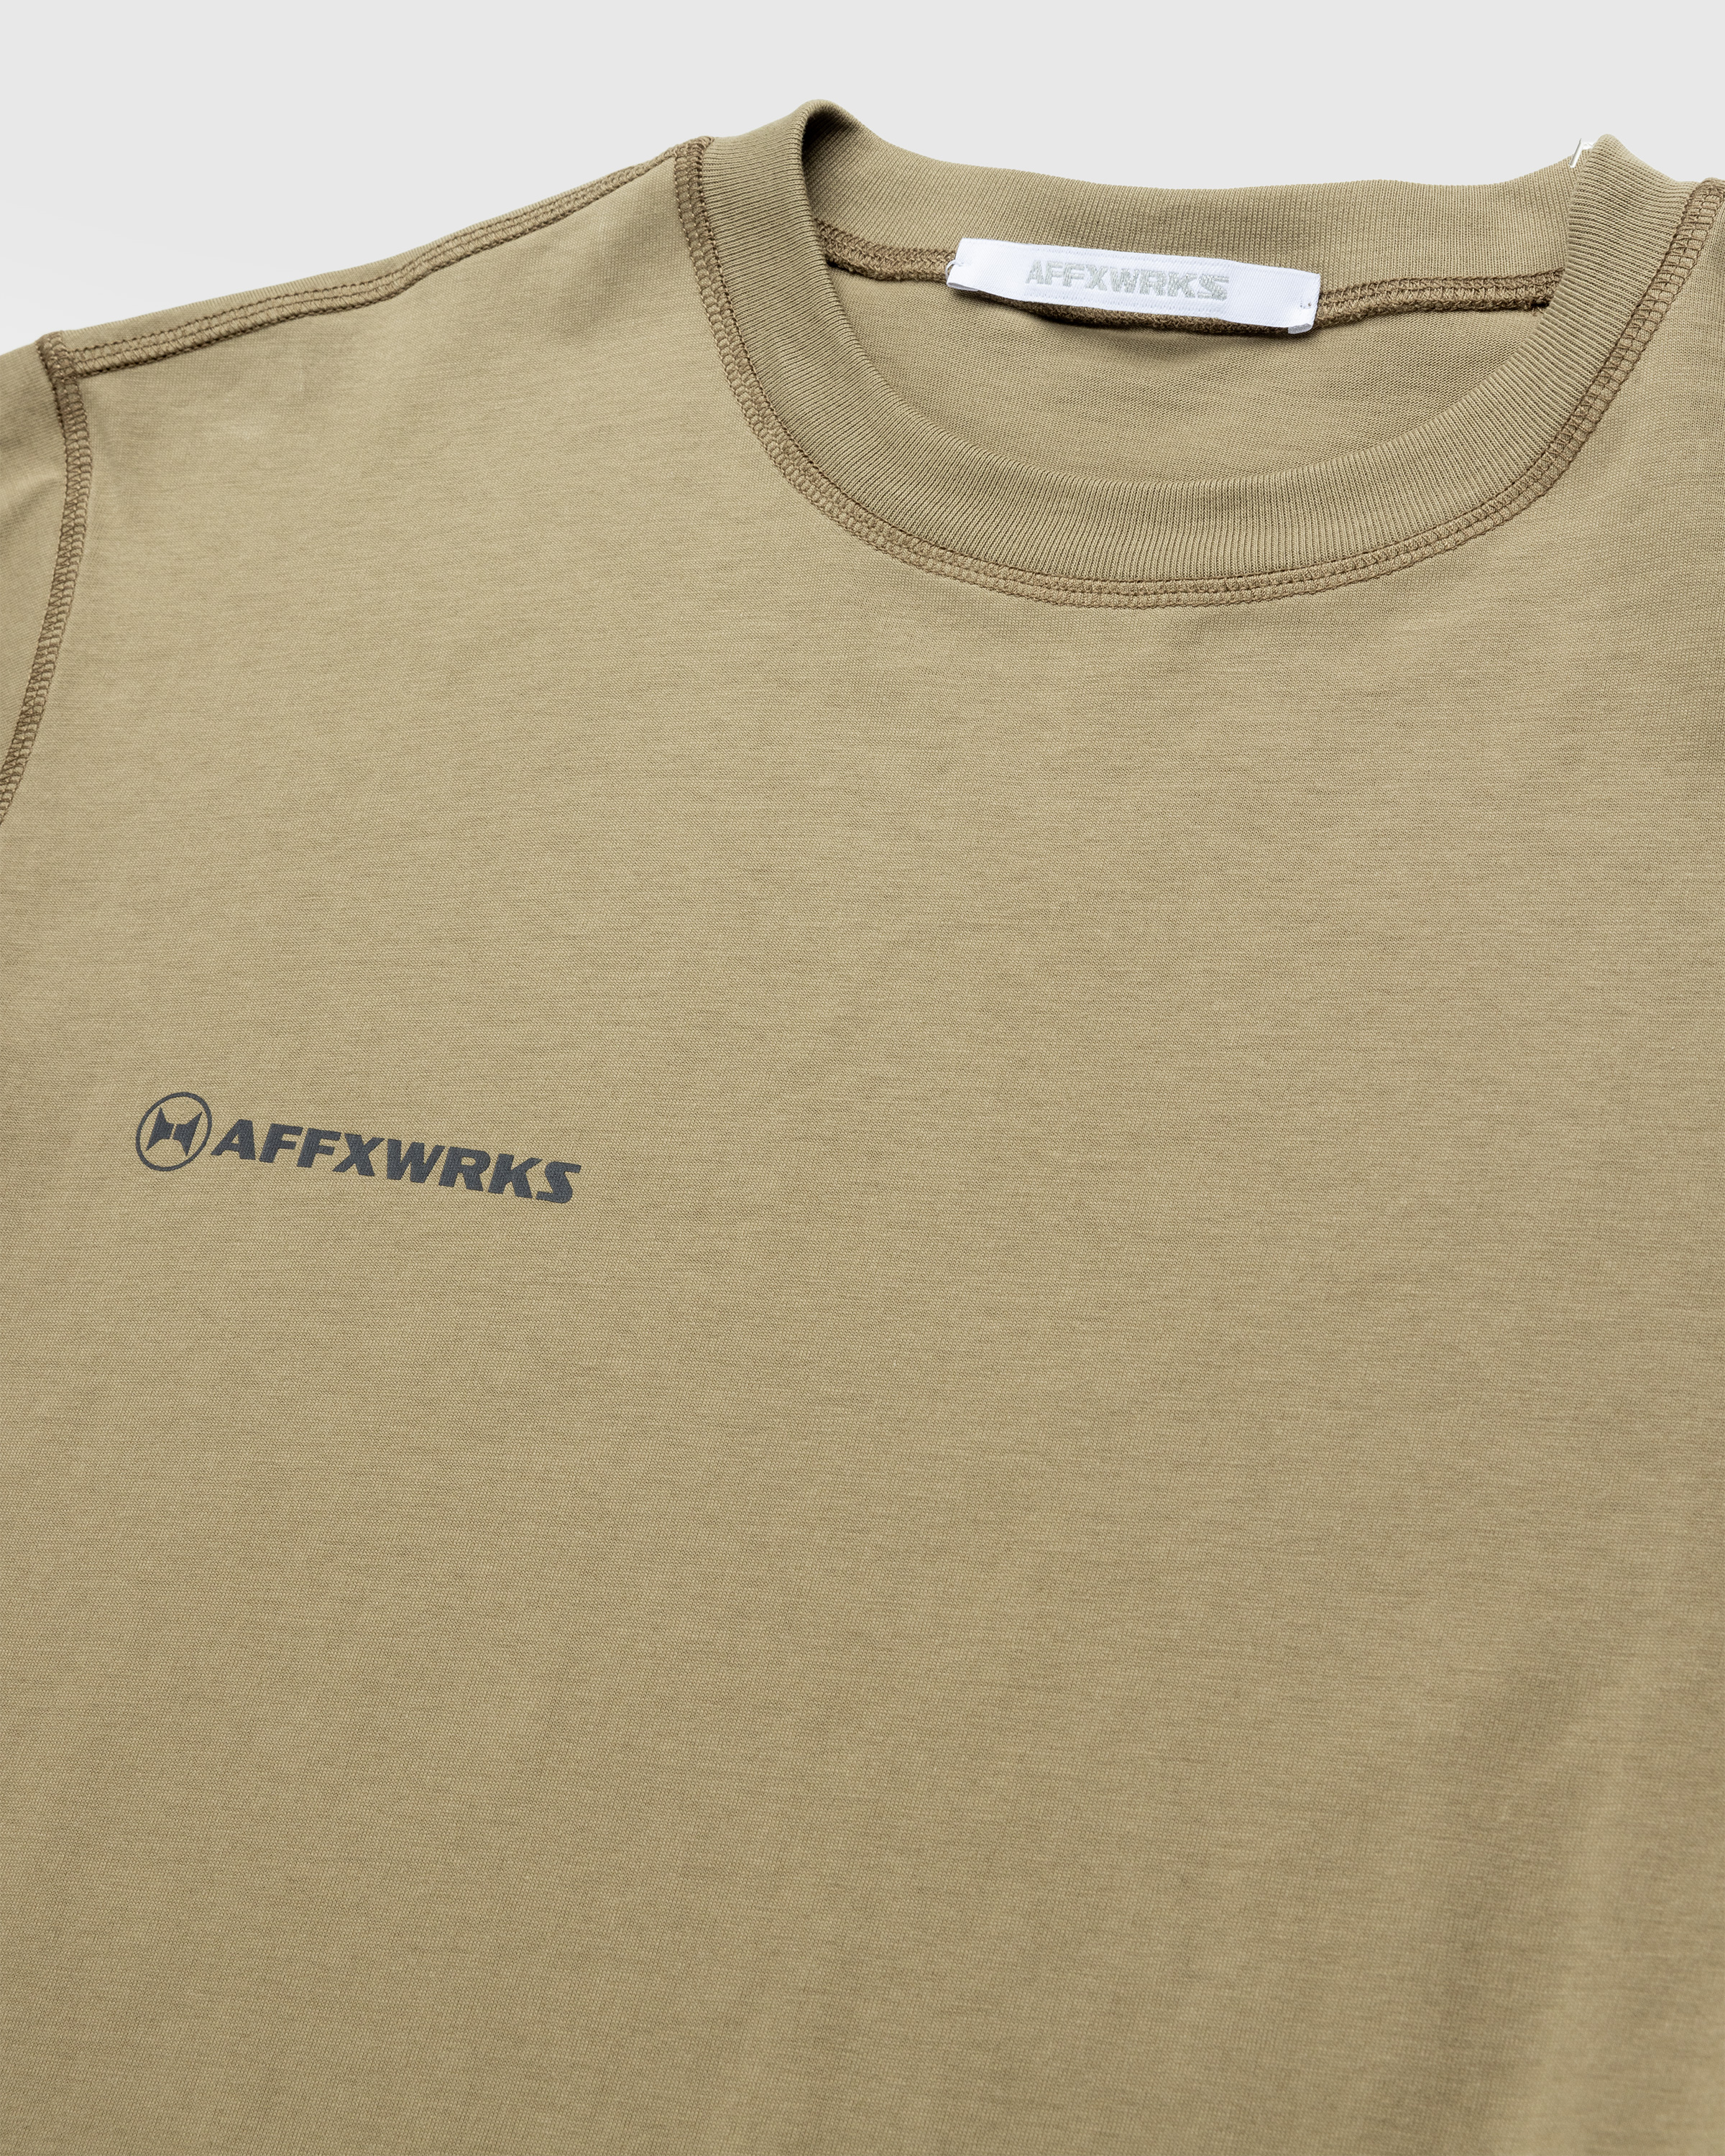 AFFXWRKS – AFFXWRKS T-Shirt Desert Green - T-Shirts - Green - Image 7